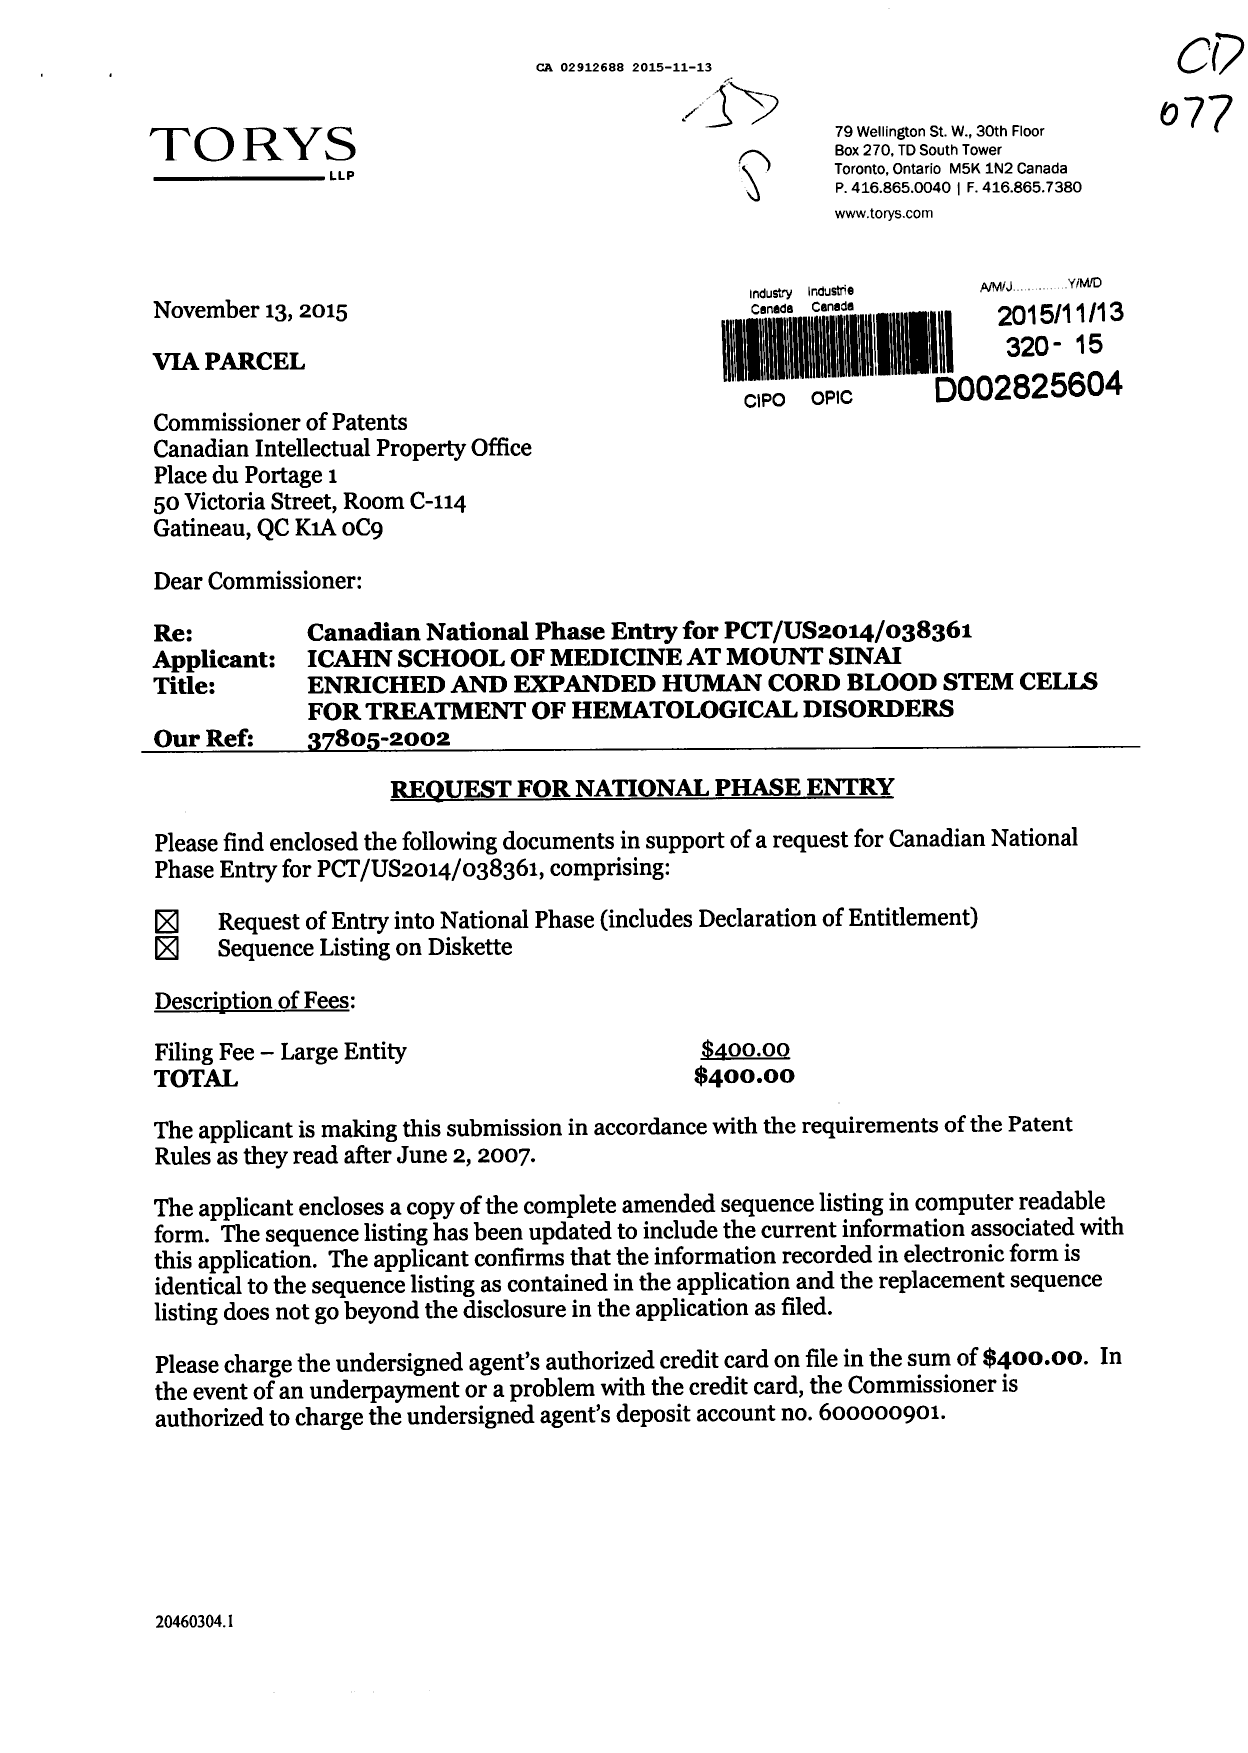 Document de brevet canadien 2912688. Demande d'entrée en phase nationale 20151113. Image 1 de 3